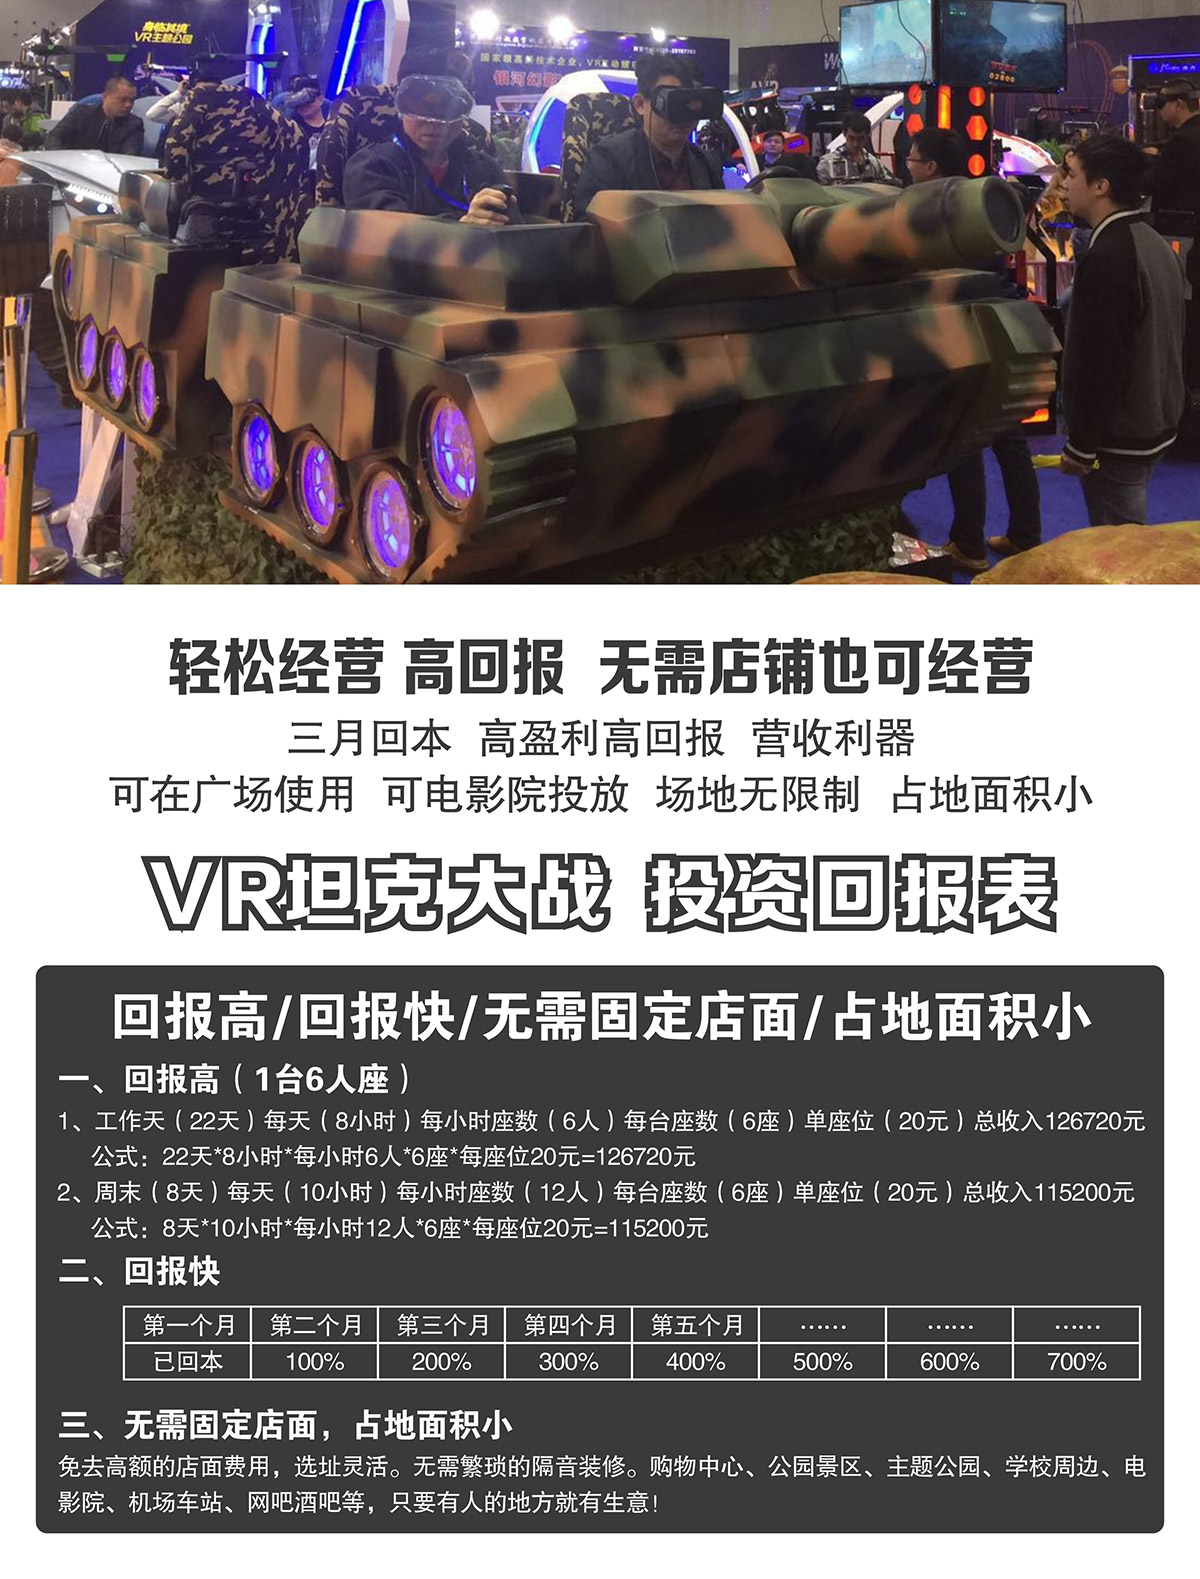 模拟安全VR坦克大战投资回报表.jpg